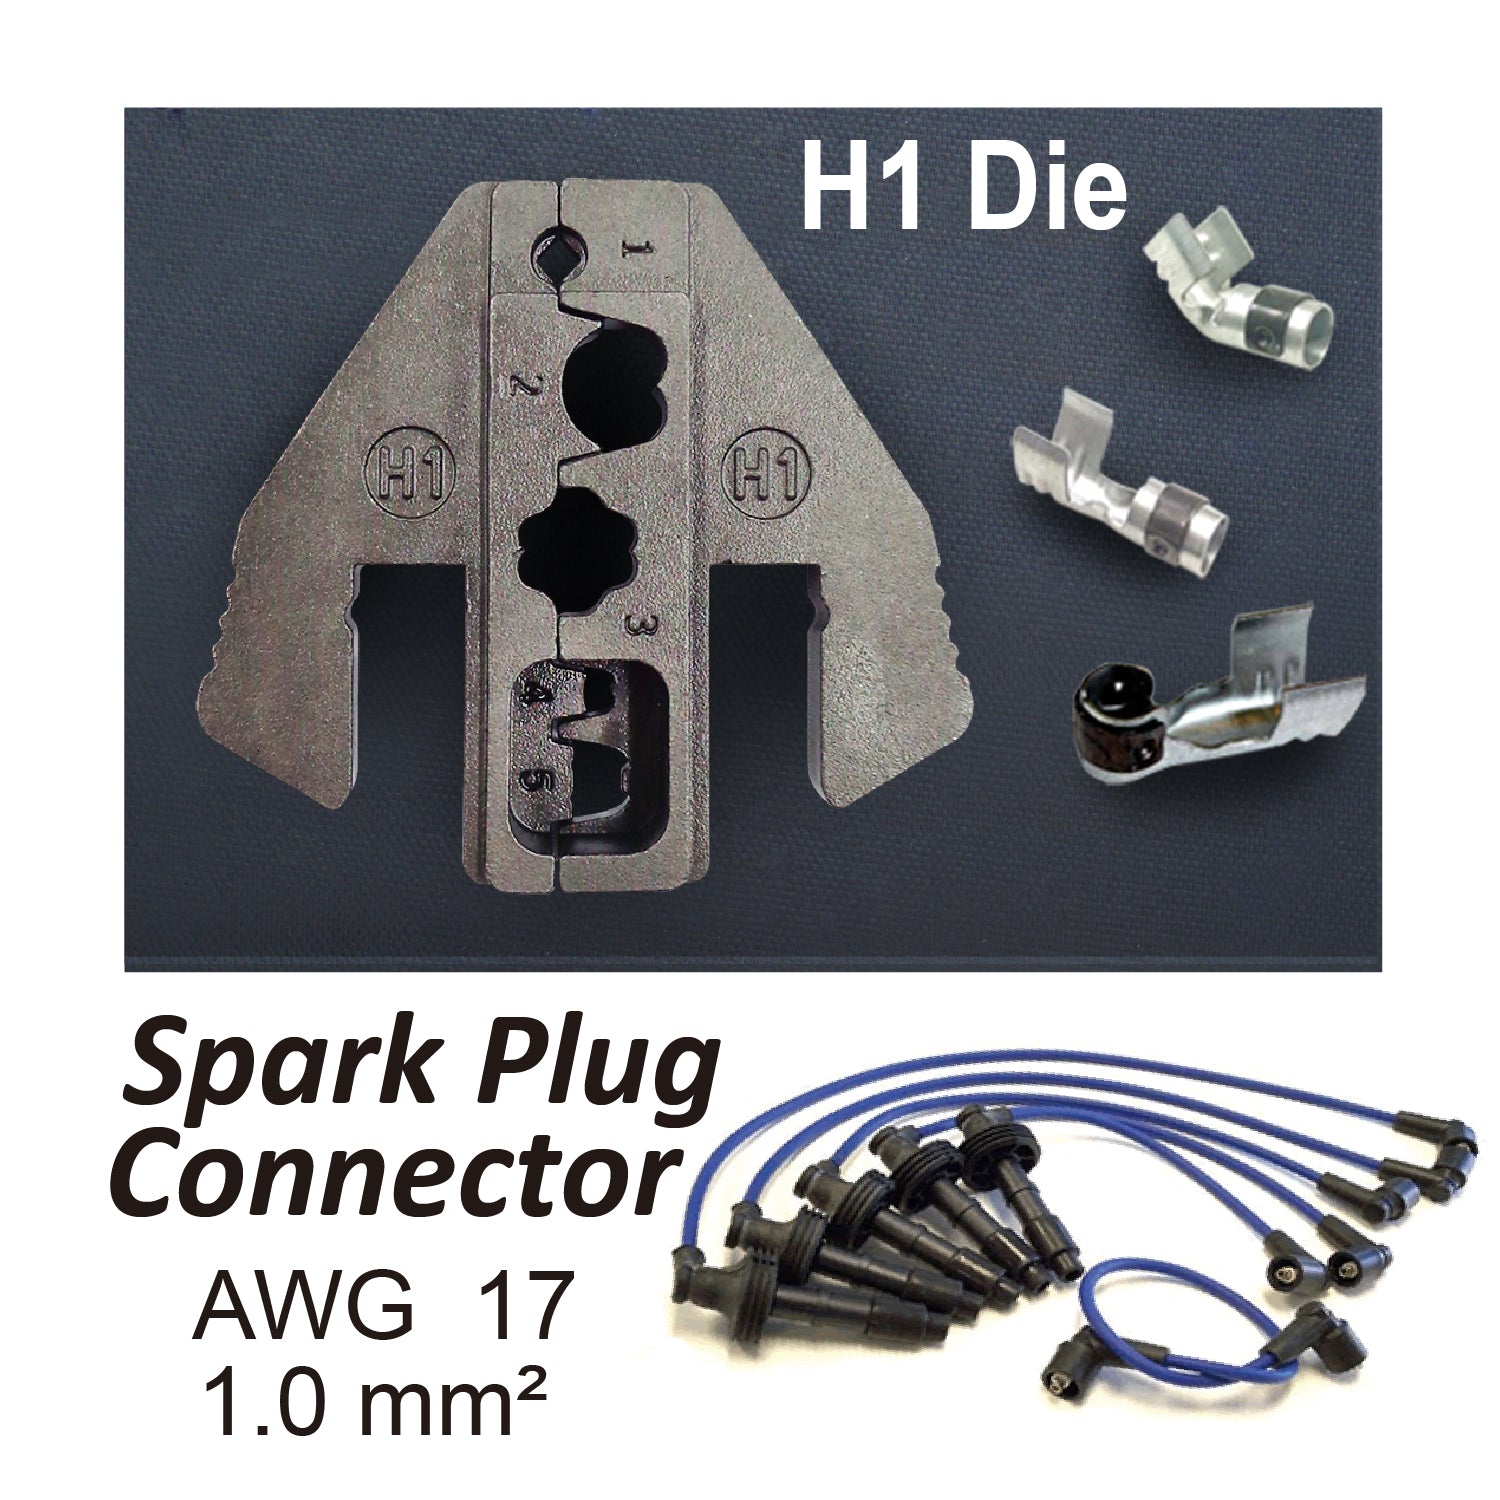 Crimping Tool Die - H1 Die for Spark Plug Connector AWG 17